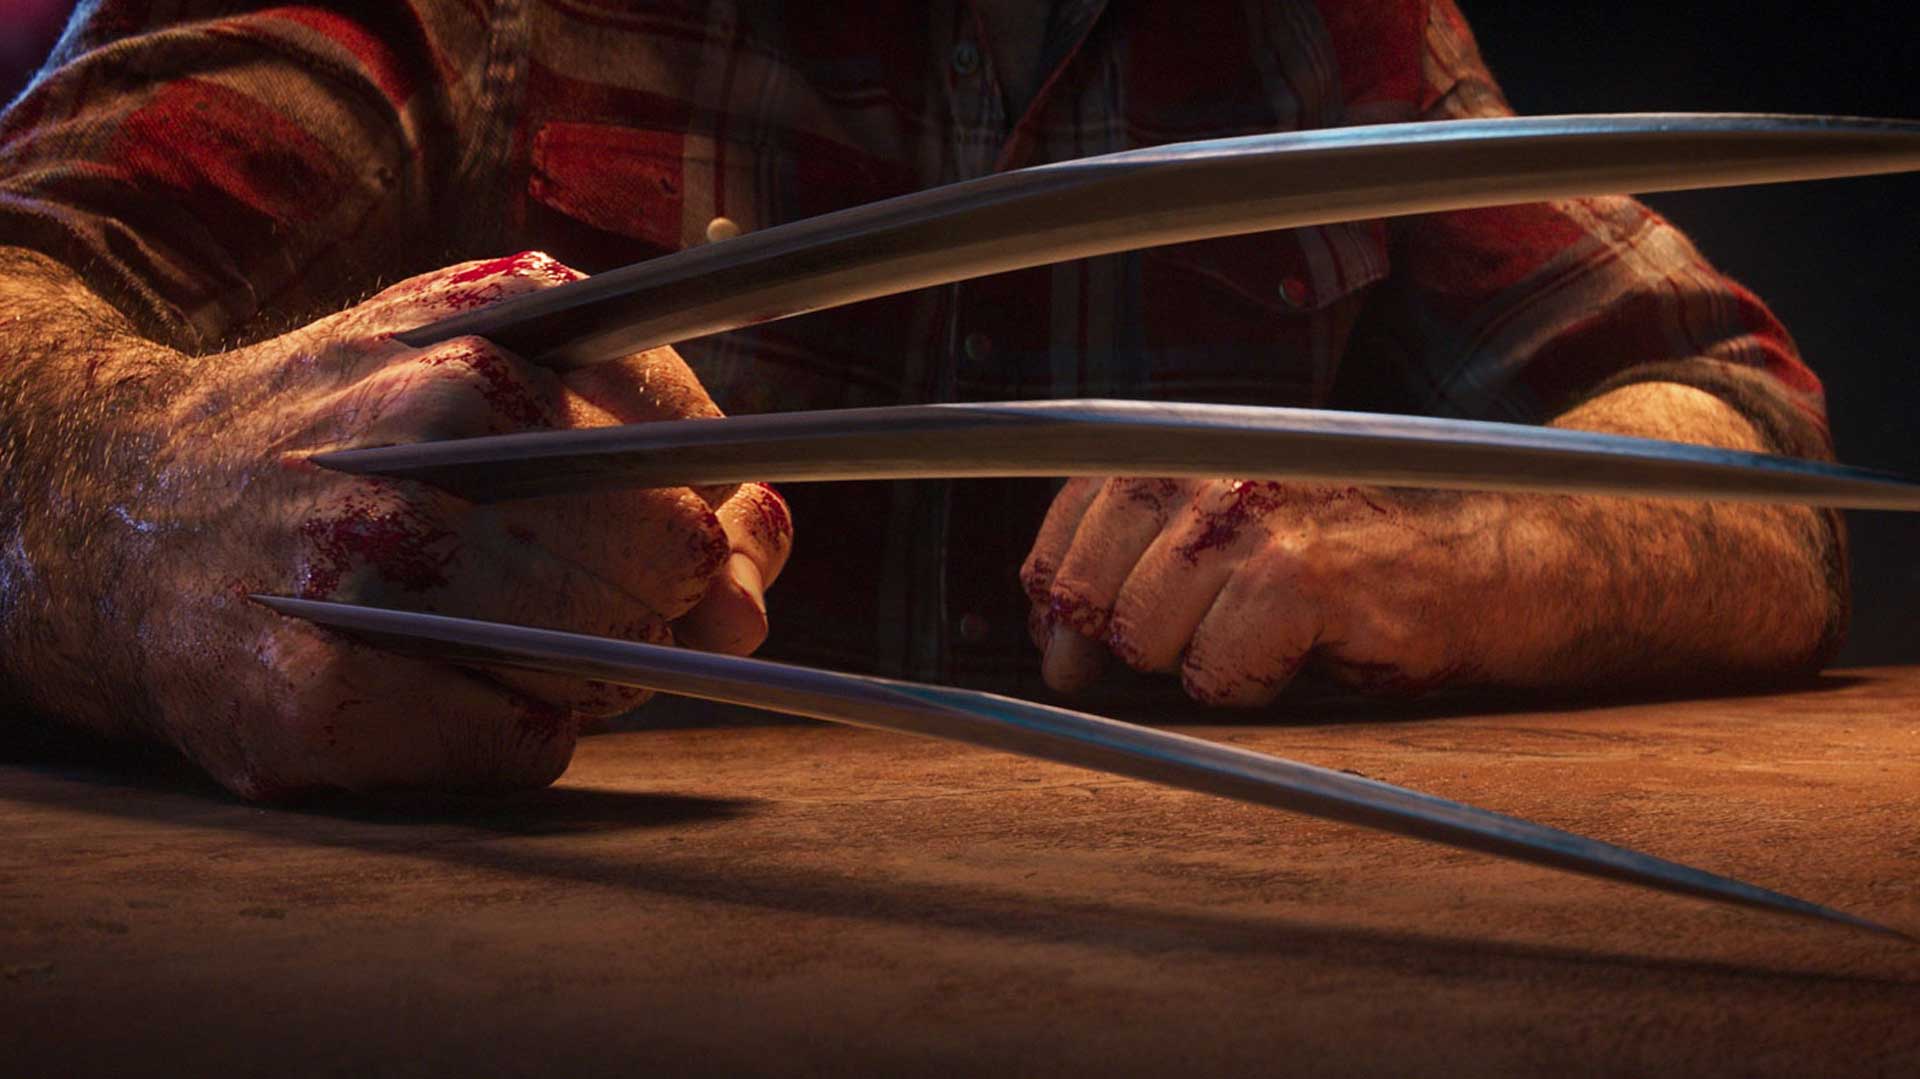 تیغه های تیز و خون آلود بیرون آمده از دست ولورین در بازی انحصاری استودیو اینسامنیاک گیمز برای پلی استیشن 5 سونی